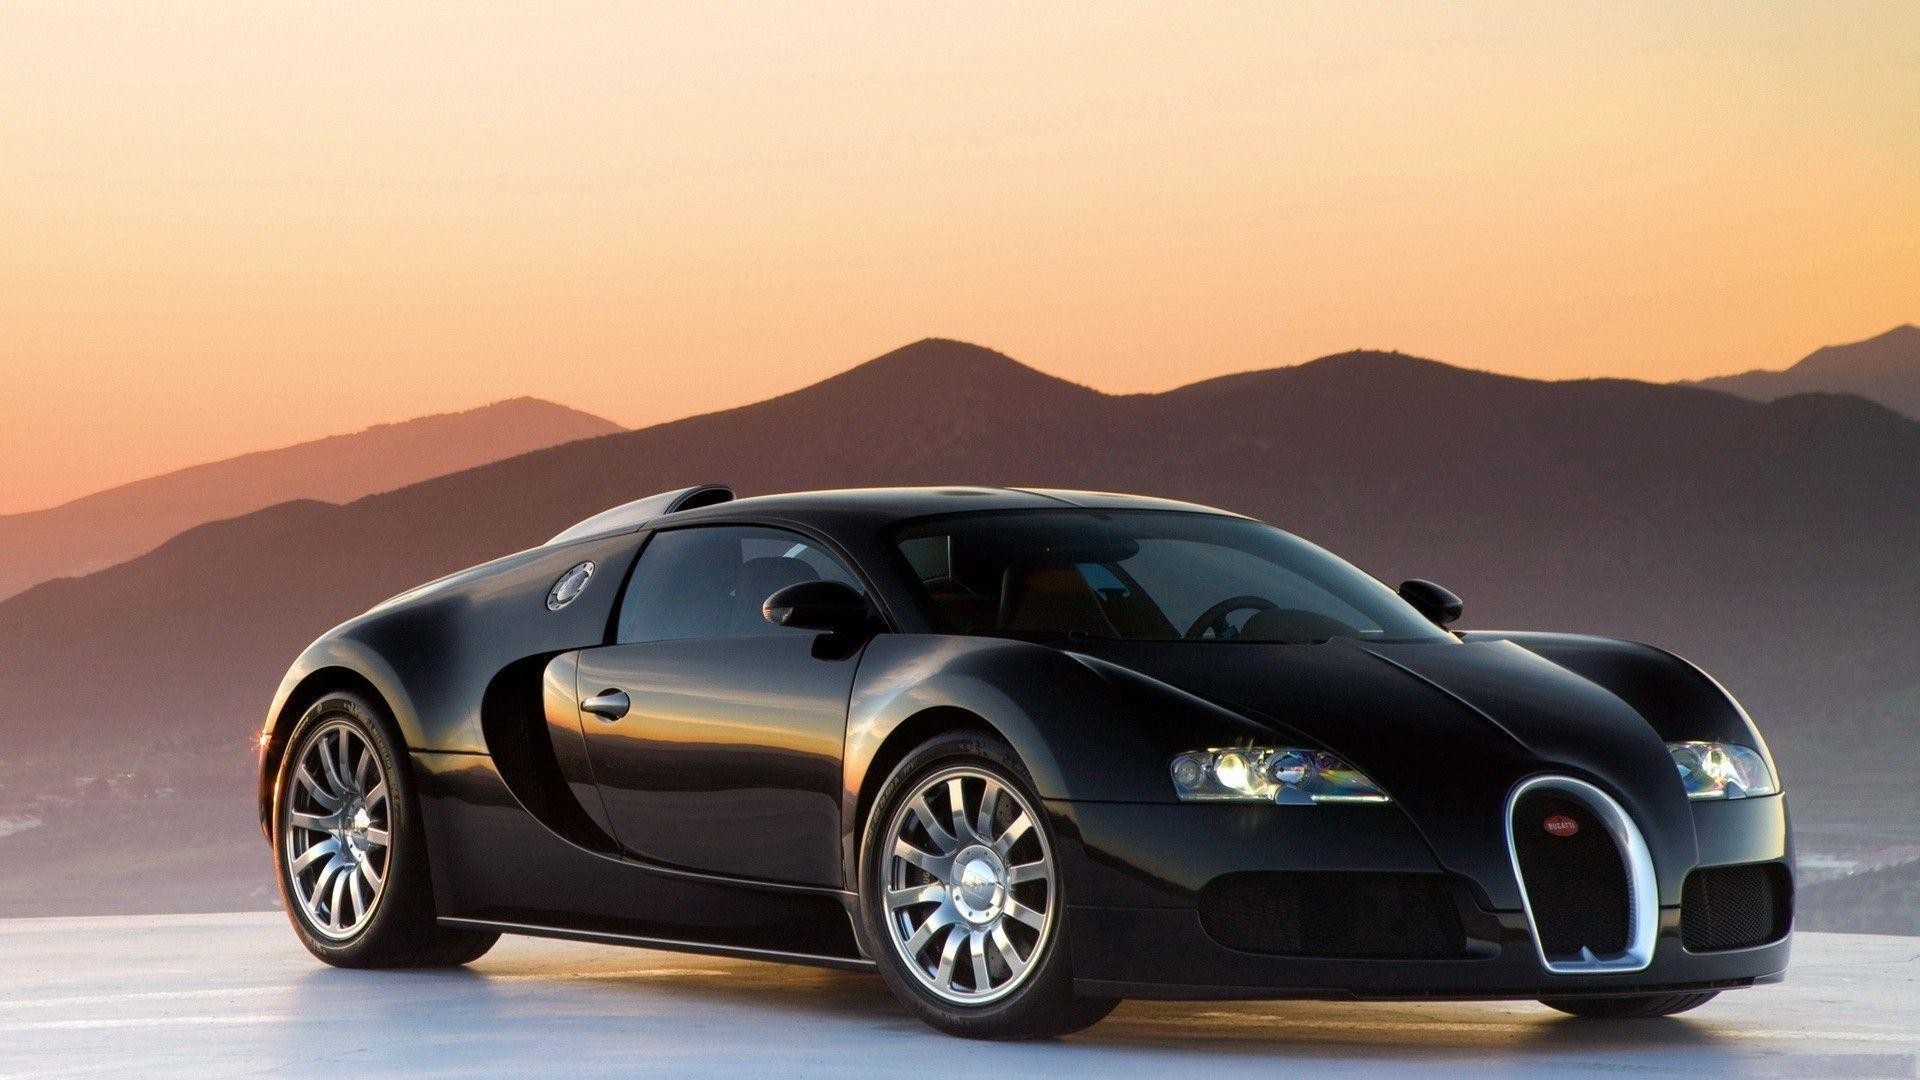 1920x1080 Fonds d'Ã©cran Bugatti Veyron : tous les wallpapers Bugatti Veyron